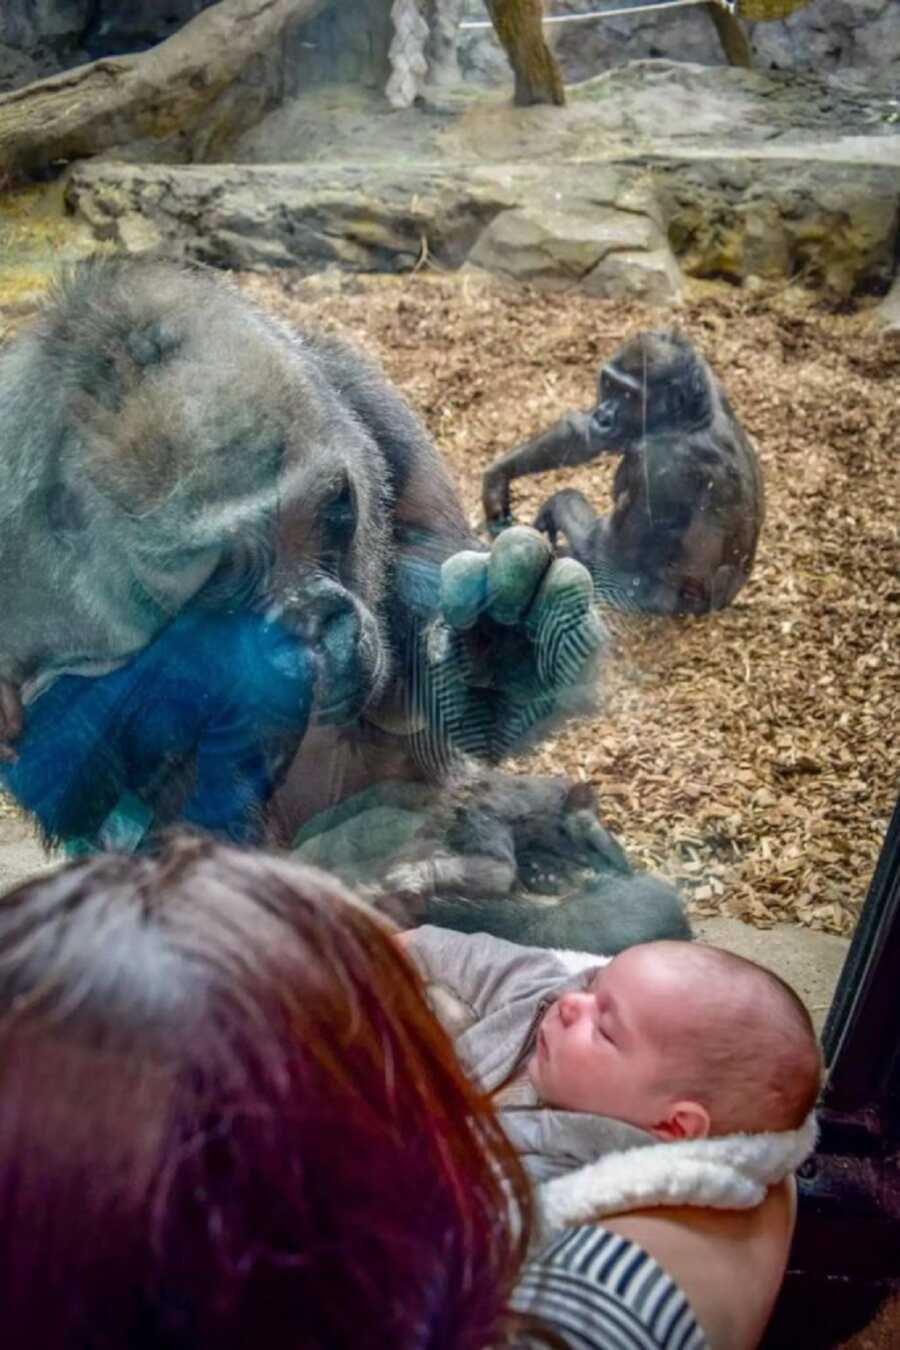 Gorilla admires newborn through the glass of her enclosure.